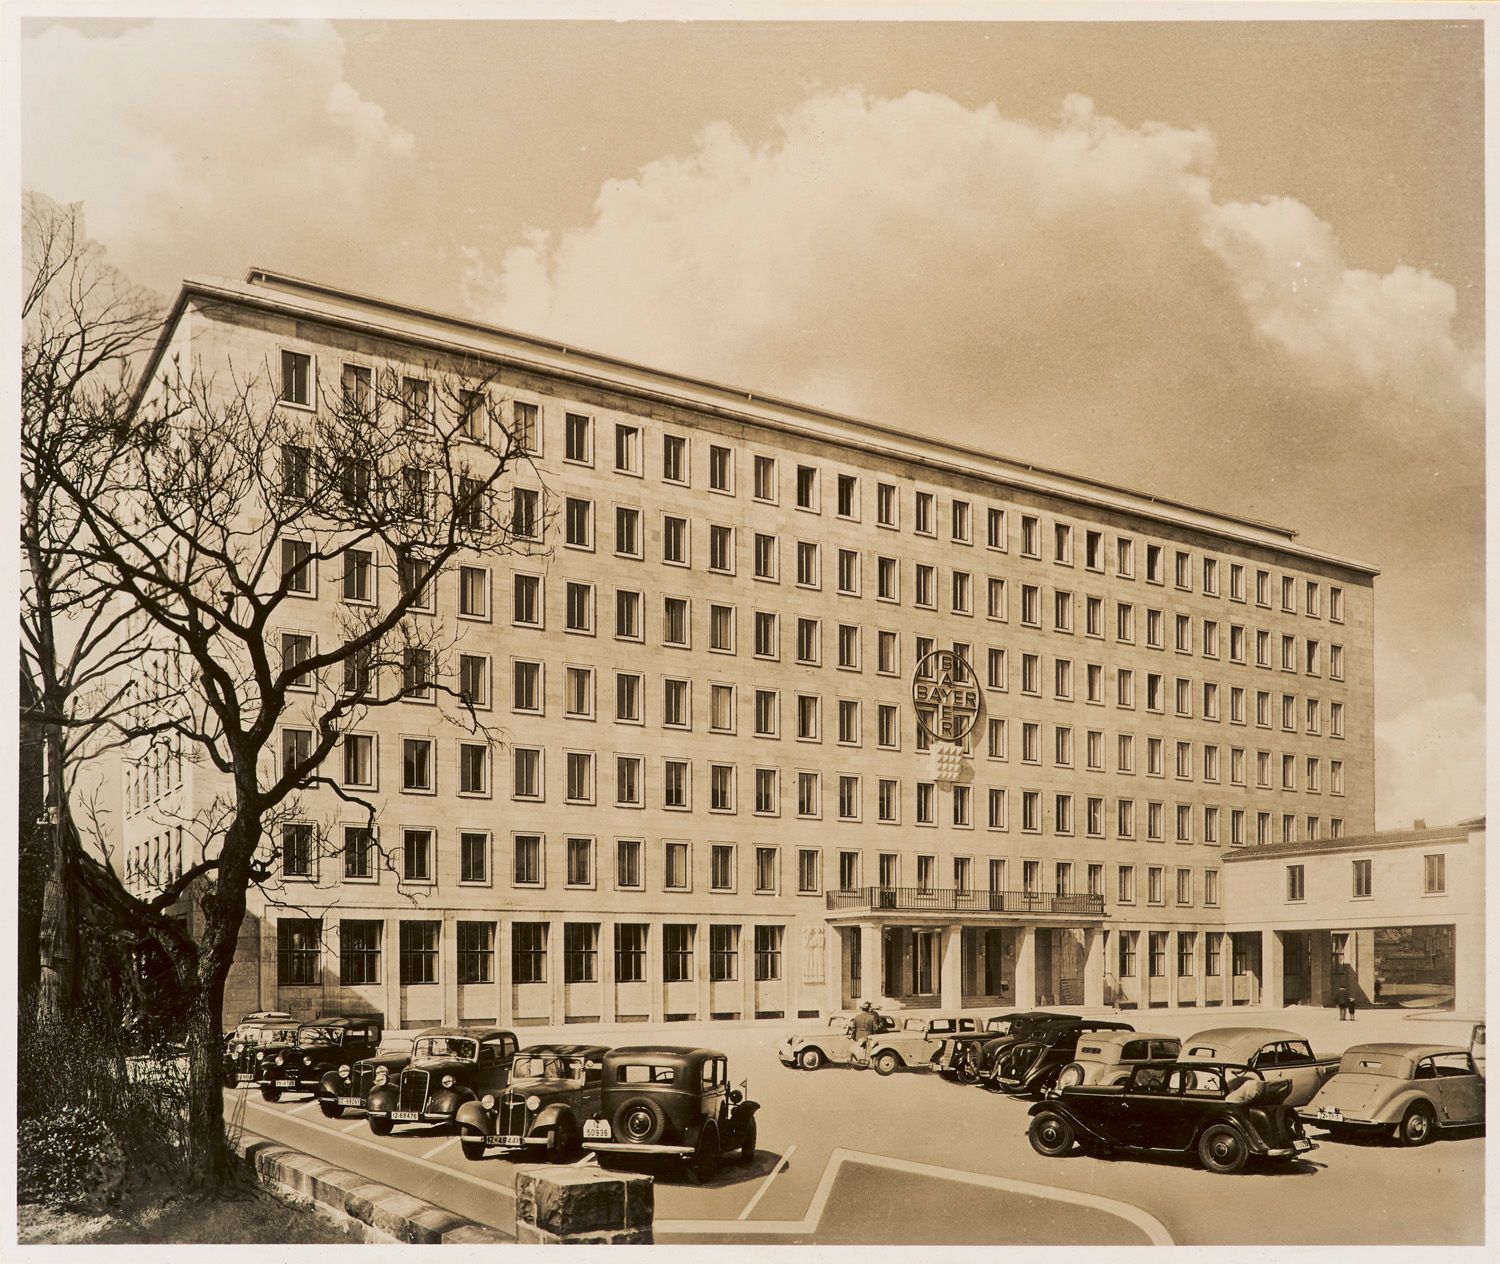 Das "Bayer"-Verwaltungs-Gebäude in Leverkusen. 32 OPhotographien (Vintages, Silb&hellip;